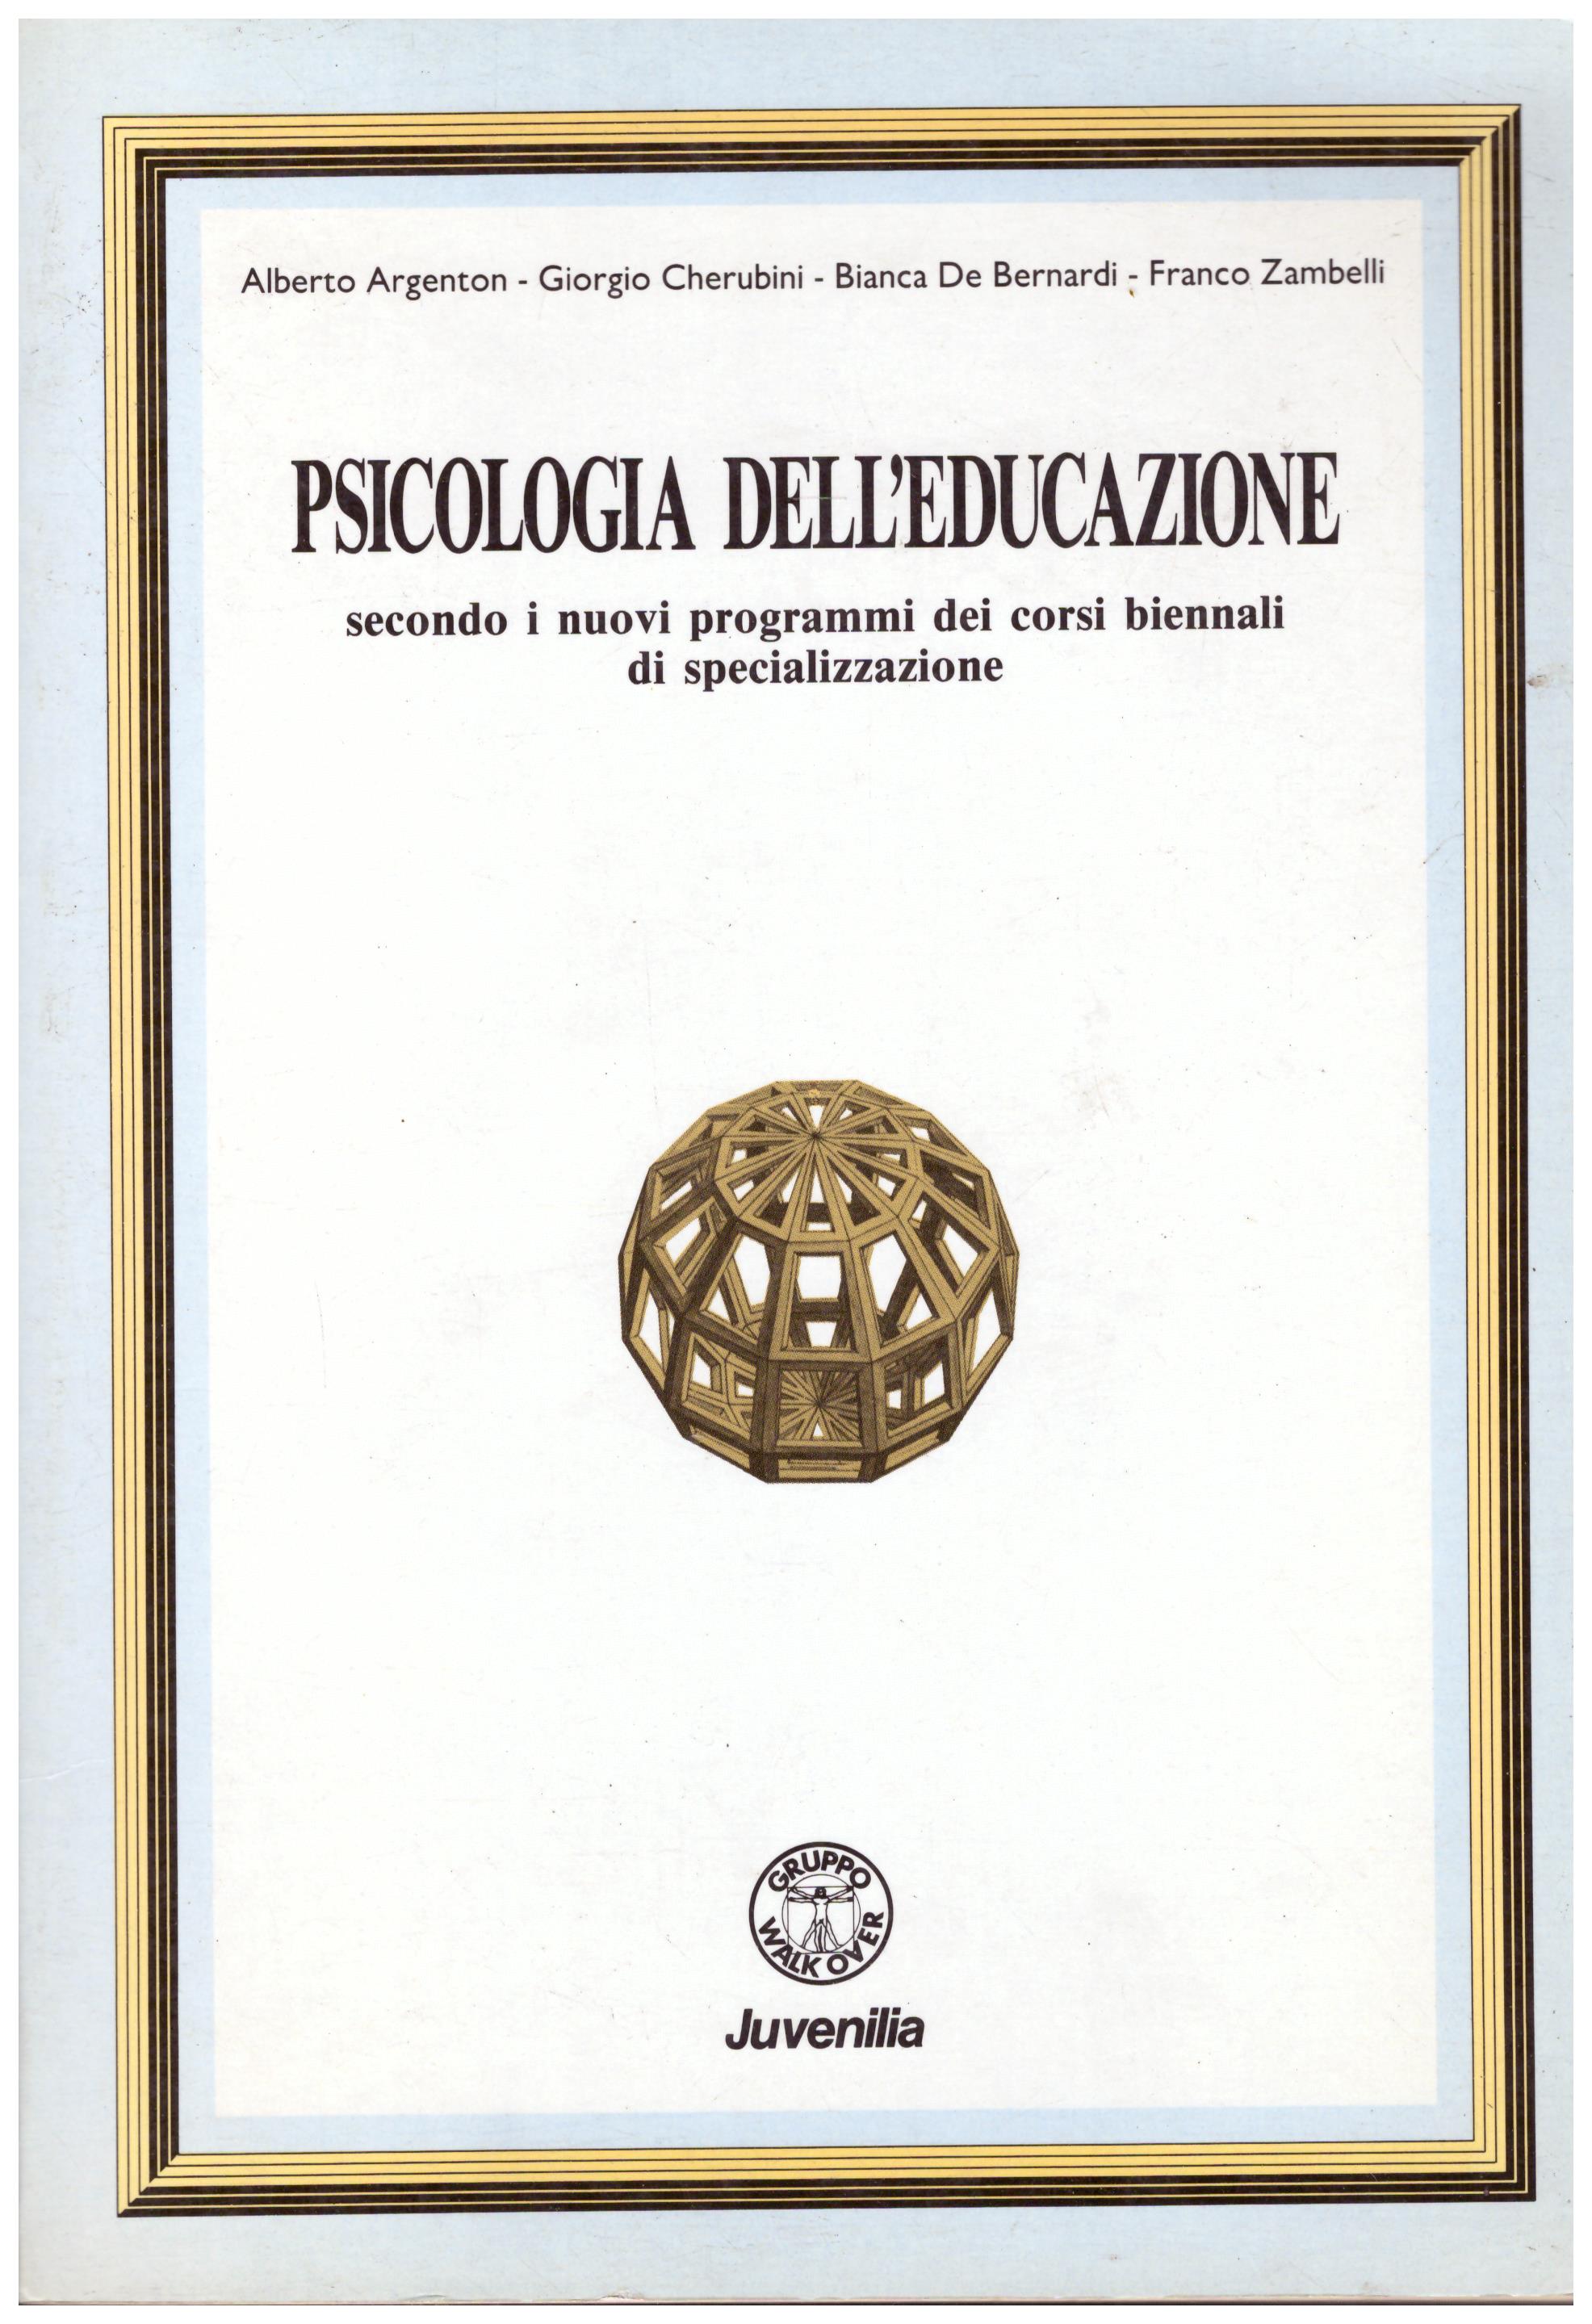 Titolo: Psicologia dello sviluppo, secondo i nuovi programmi dei corsi biennali di specializzazione  Autore : AA.VV.  Editore: Juvenilia, 1990